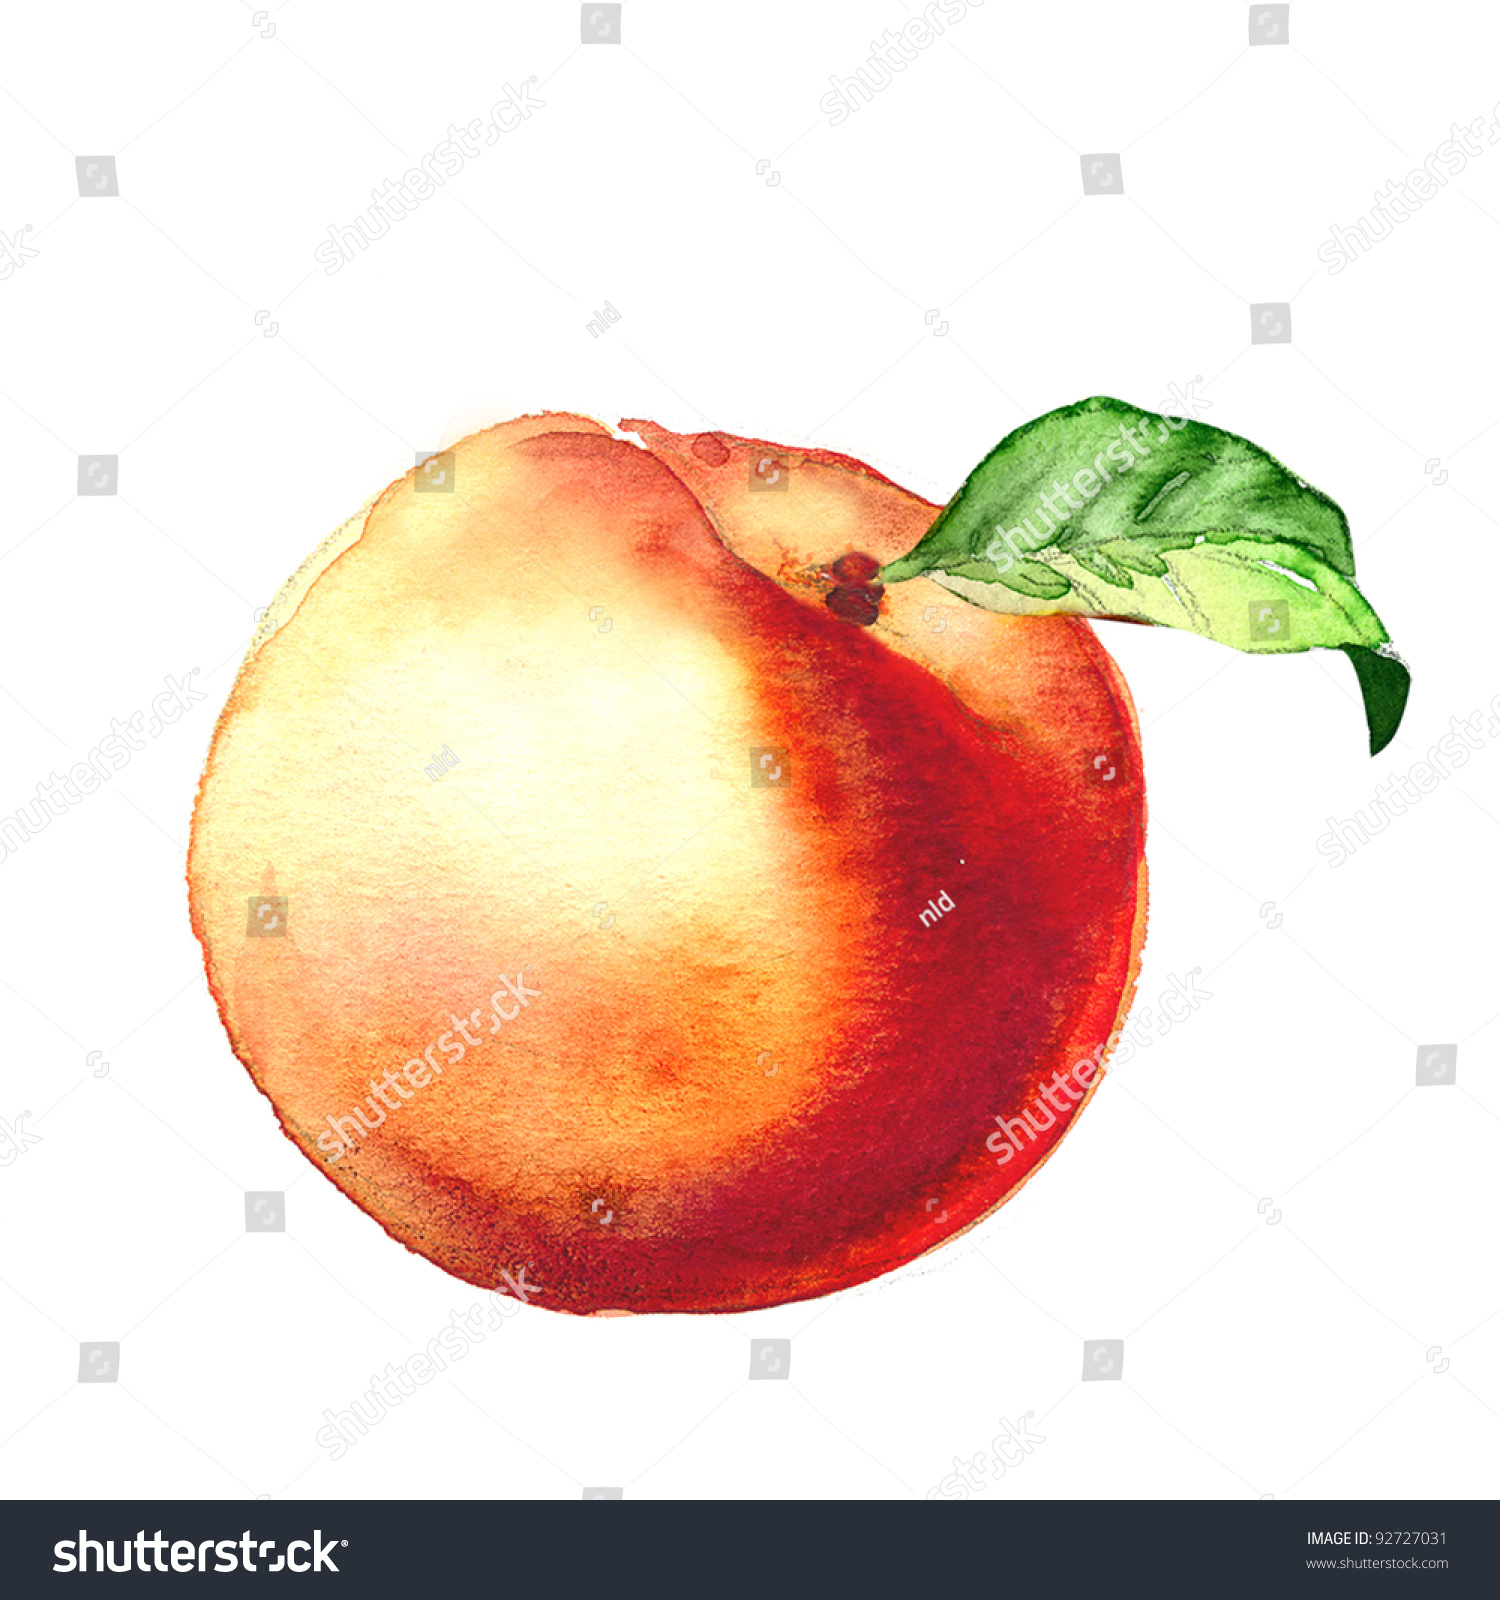 Персик акварелью